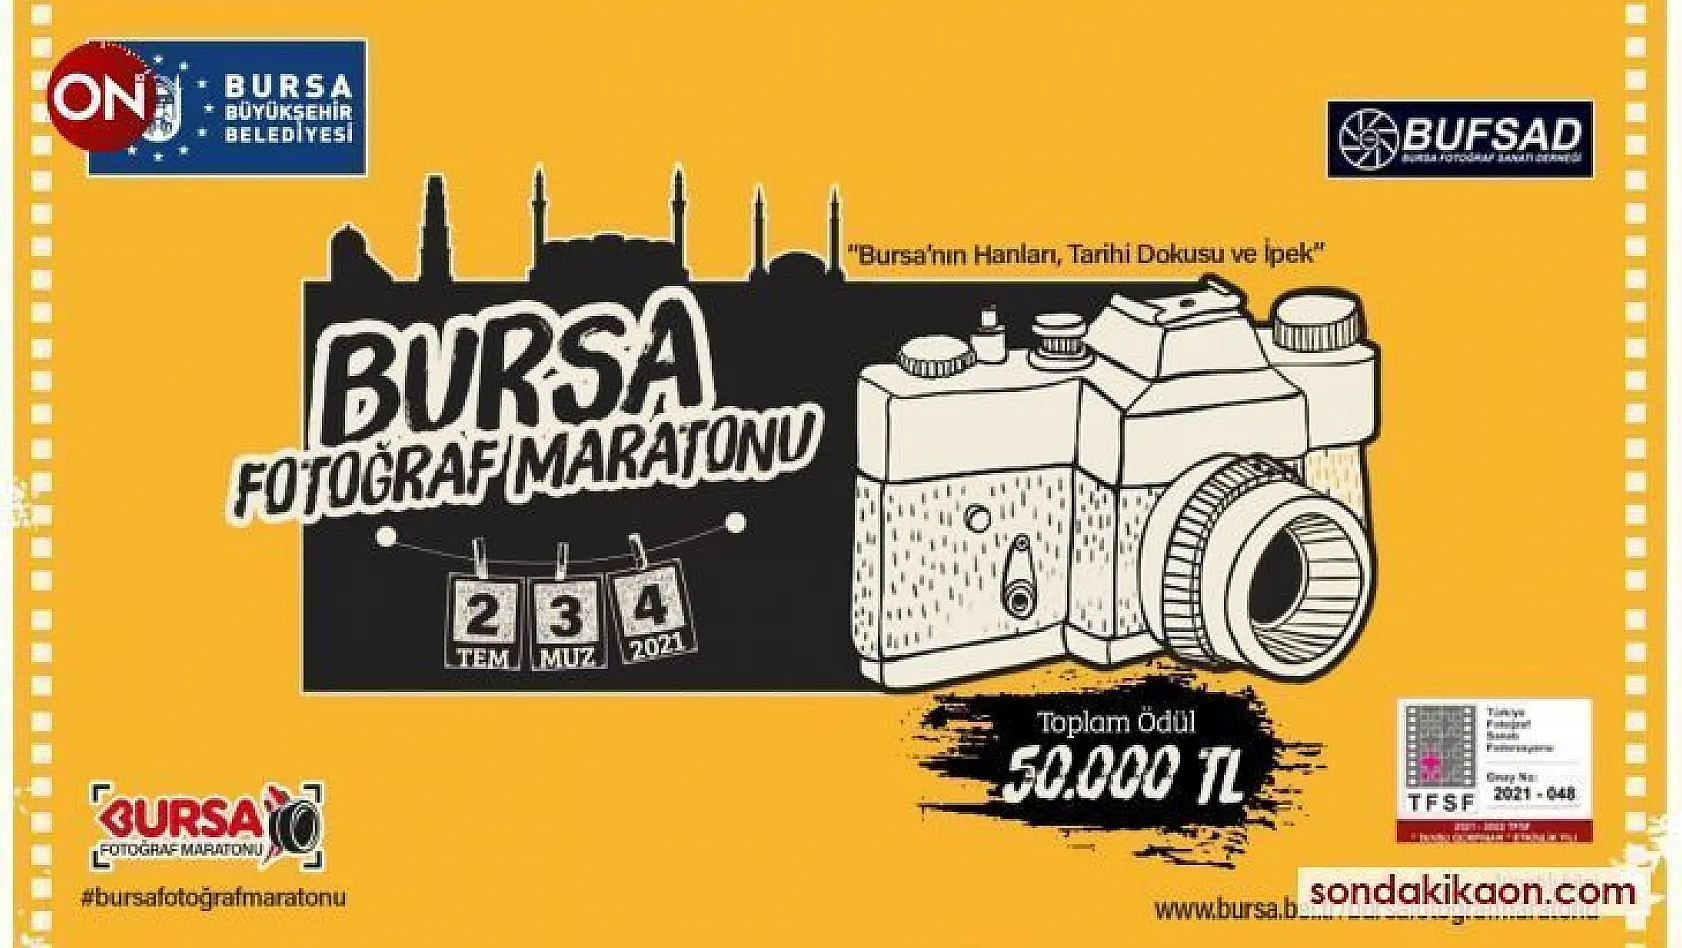 Ulusal Bursa Fotoğraf Maratonu 2 Temmuzda başlıyor